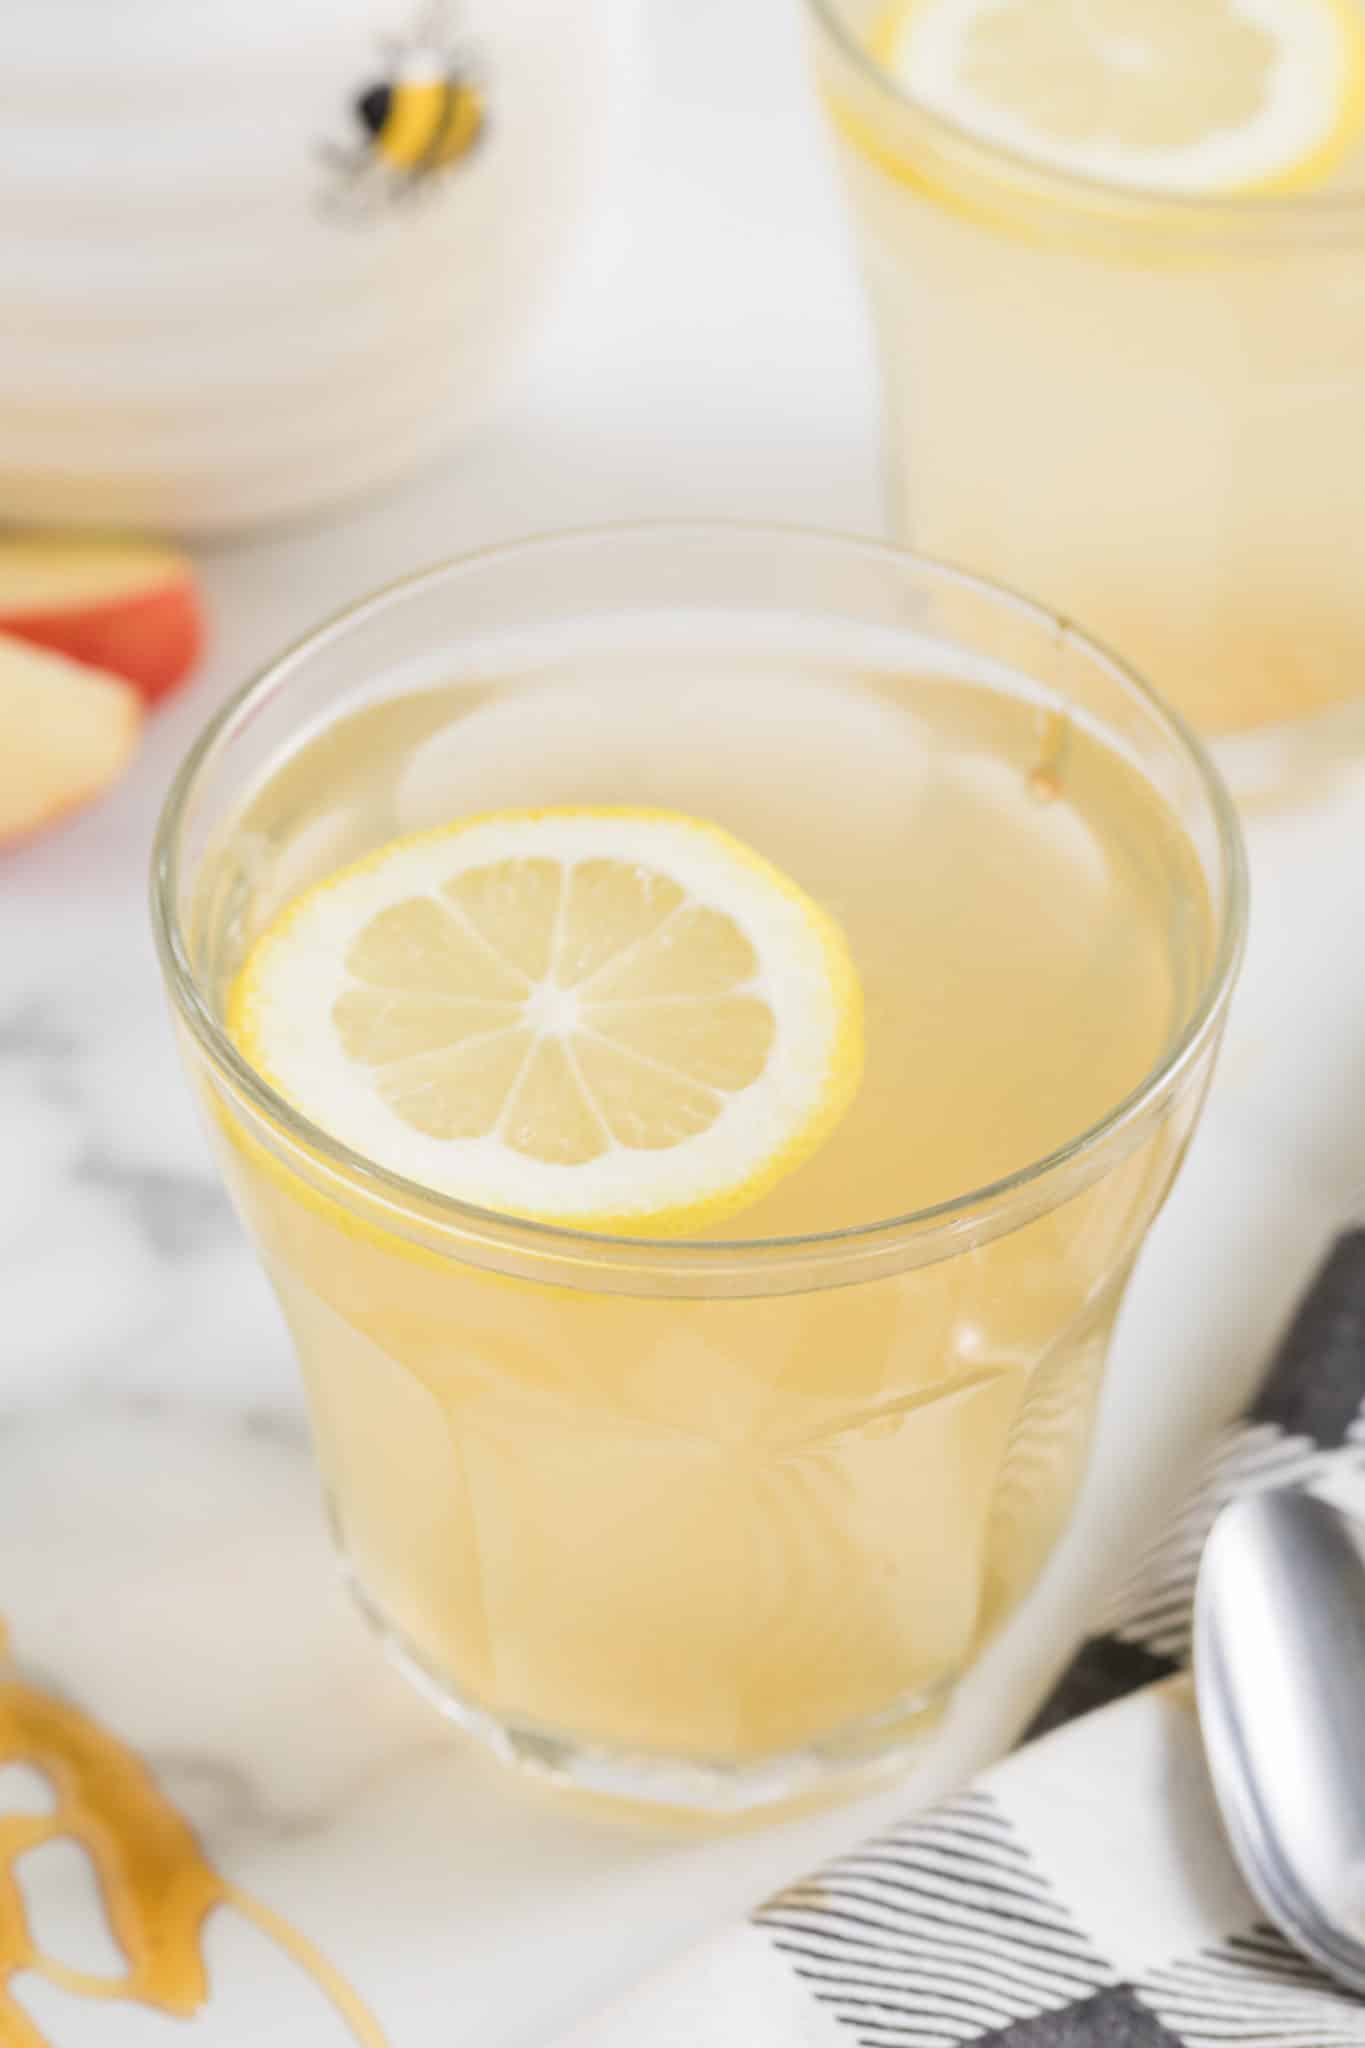 apple cider vinegar and lemon juice detox drink.